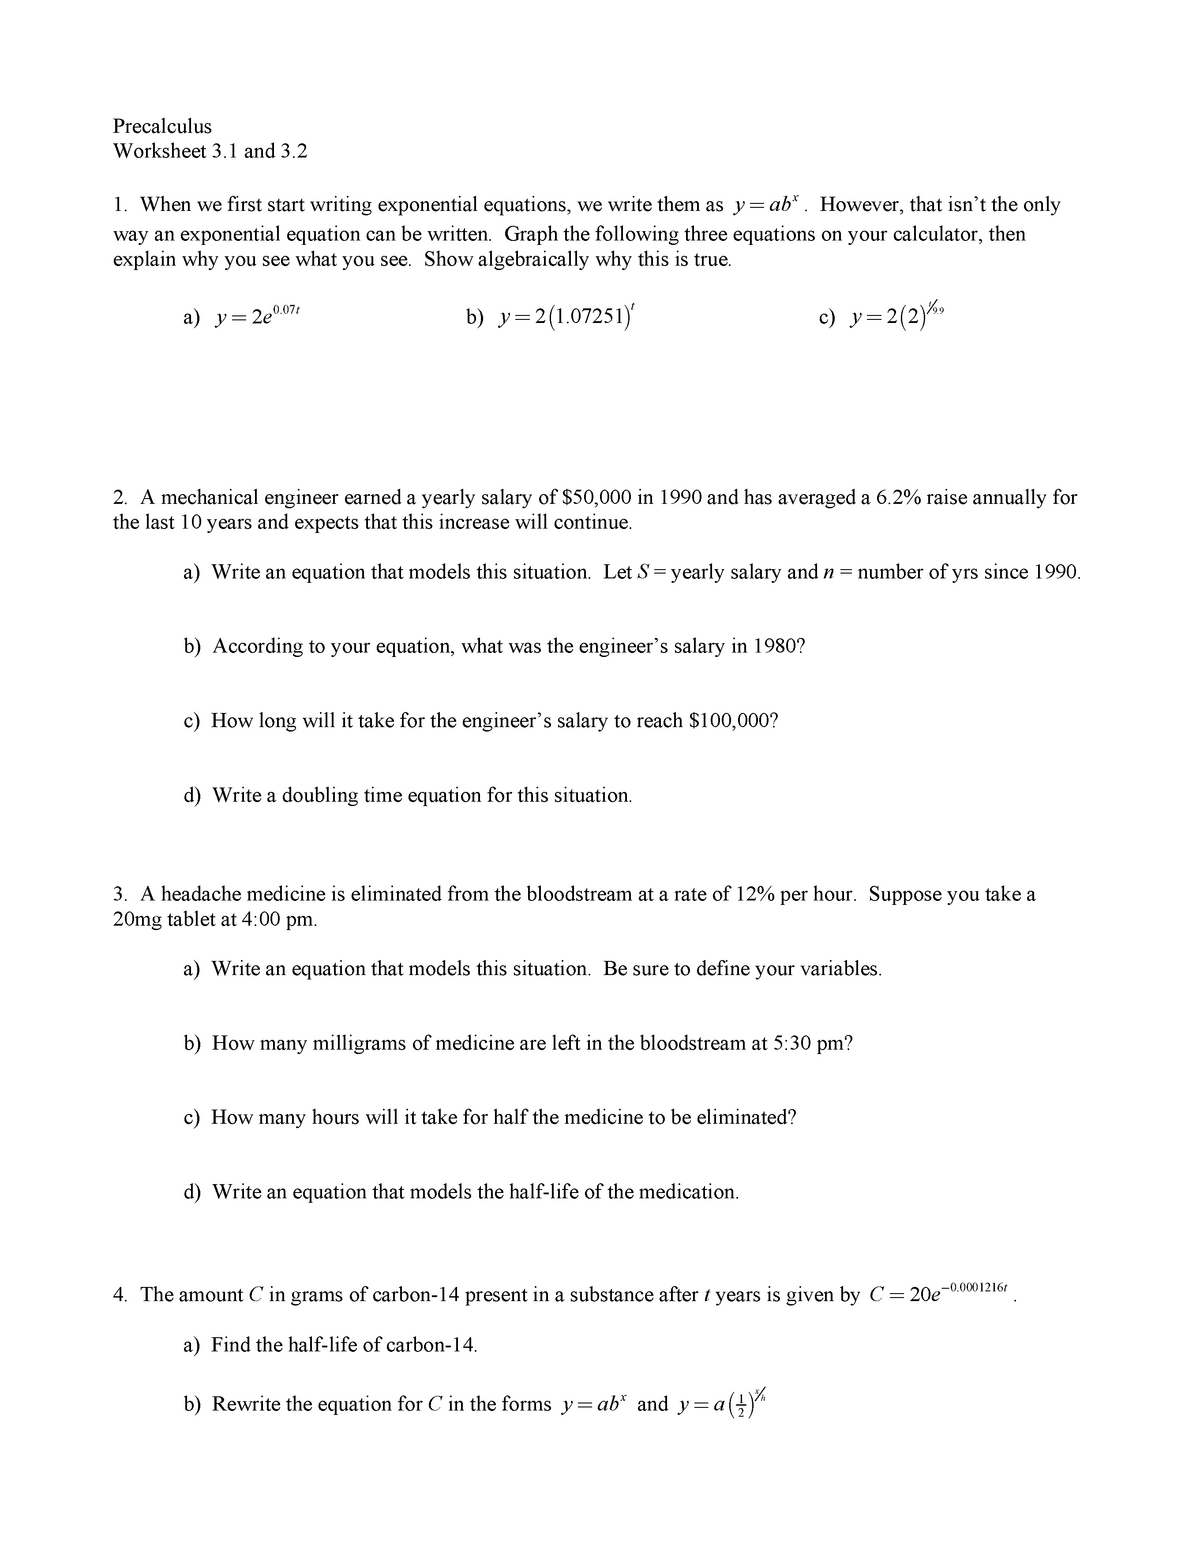 Precalc - Chapter 3 Worksheet - Grade 12 - Calculus - StuDocu